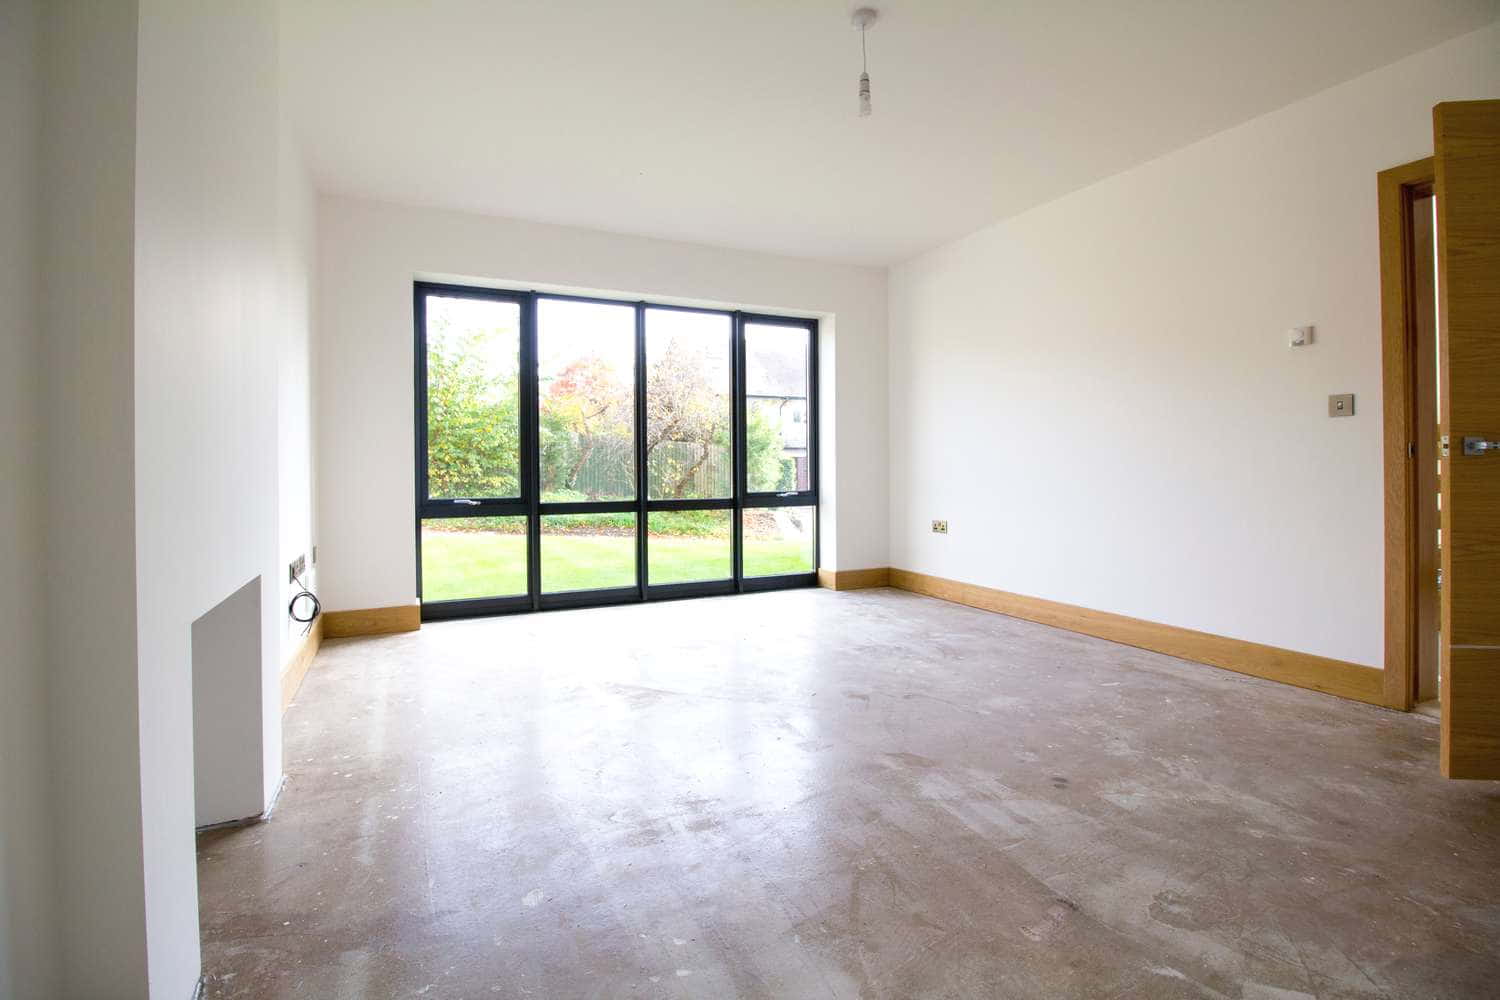 Floor to ceiling aluminium window in the lounge area.